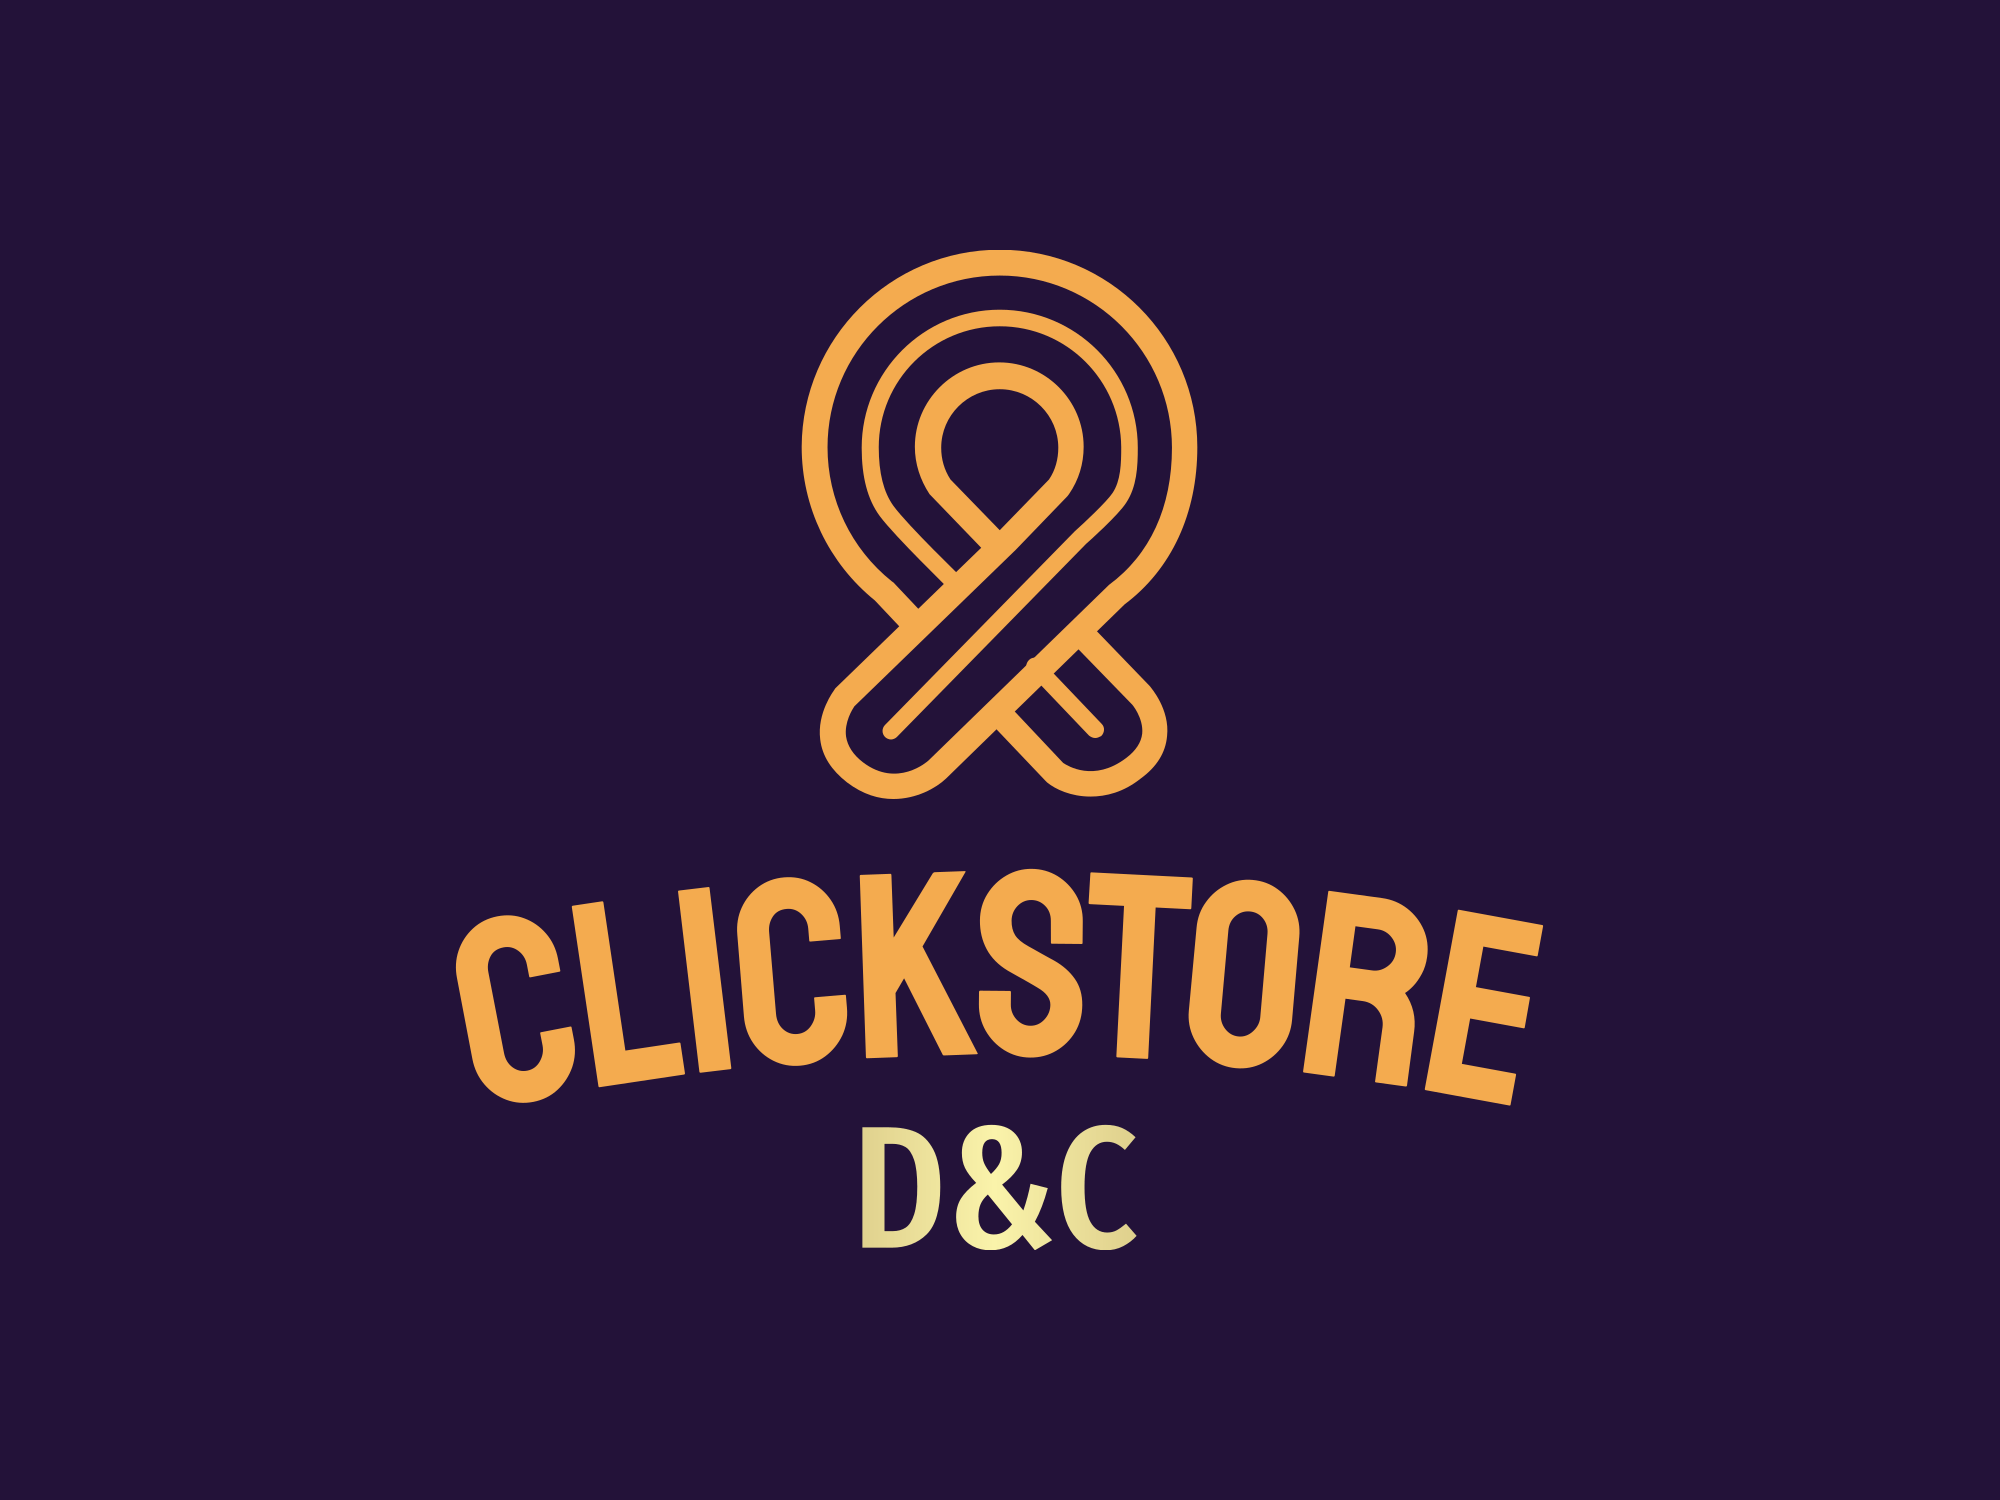 Click store D&C